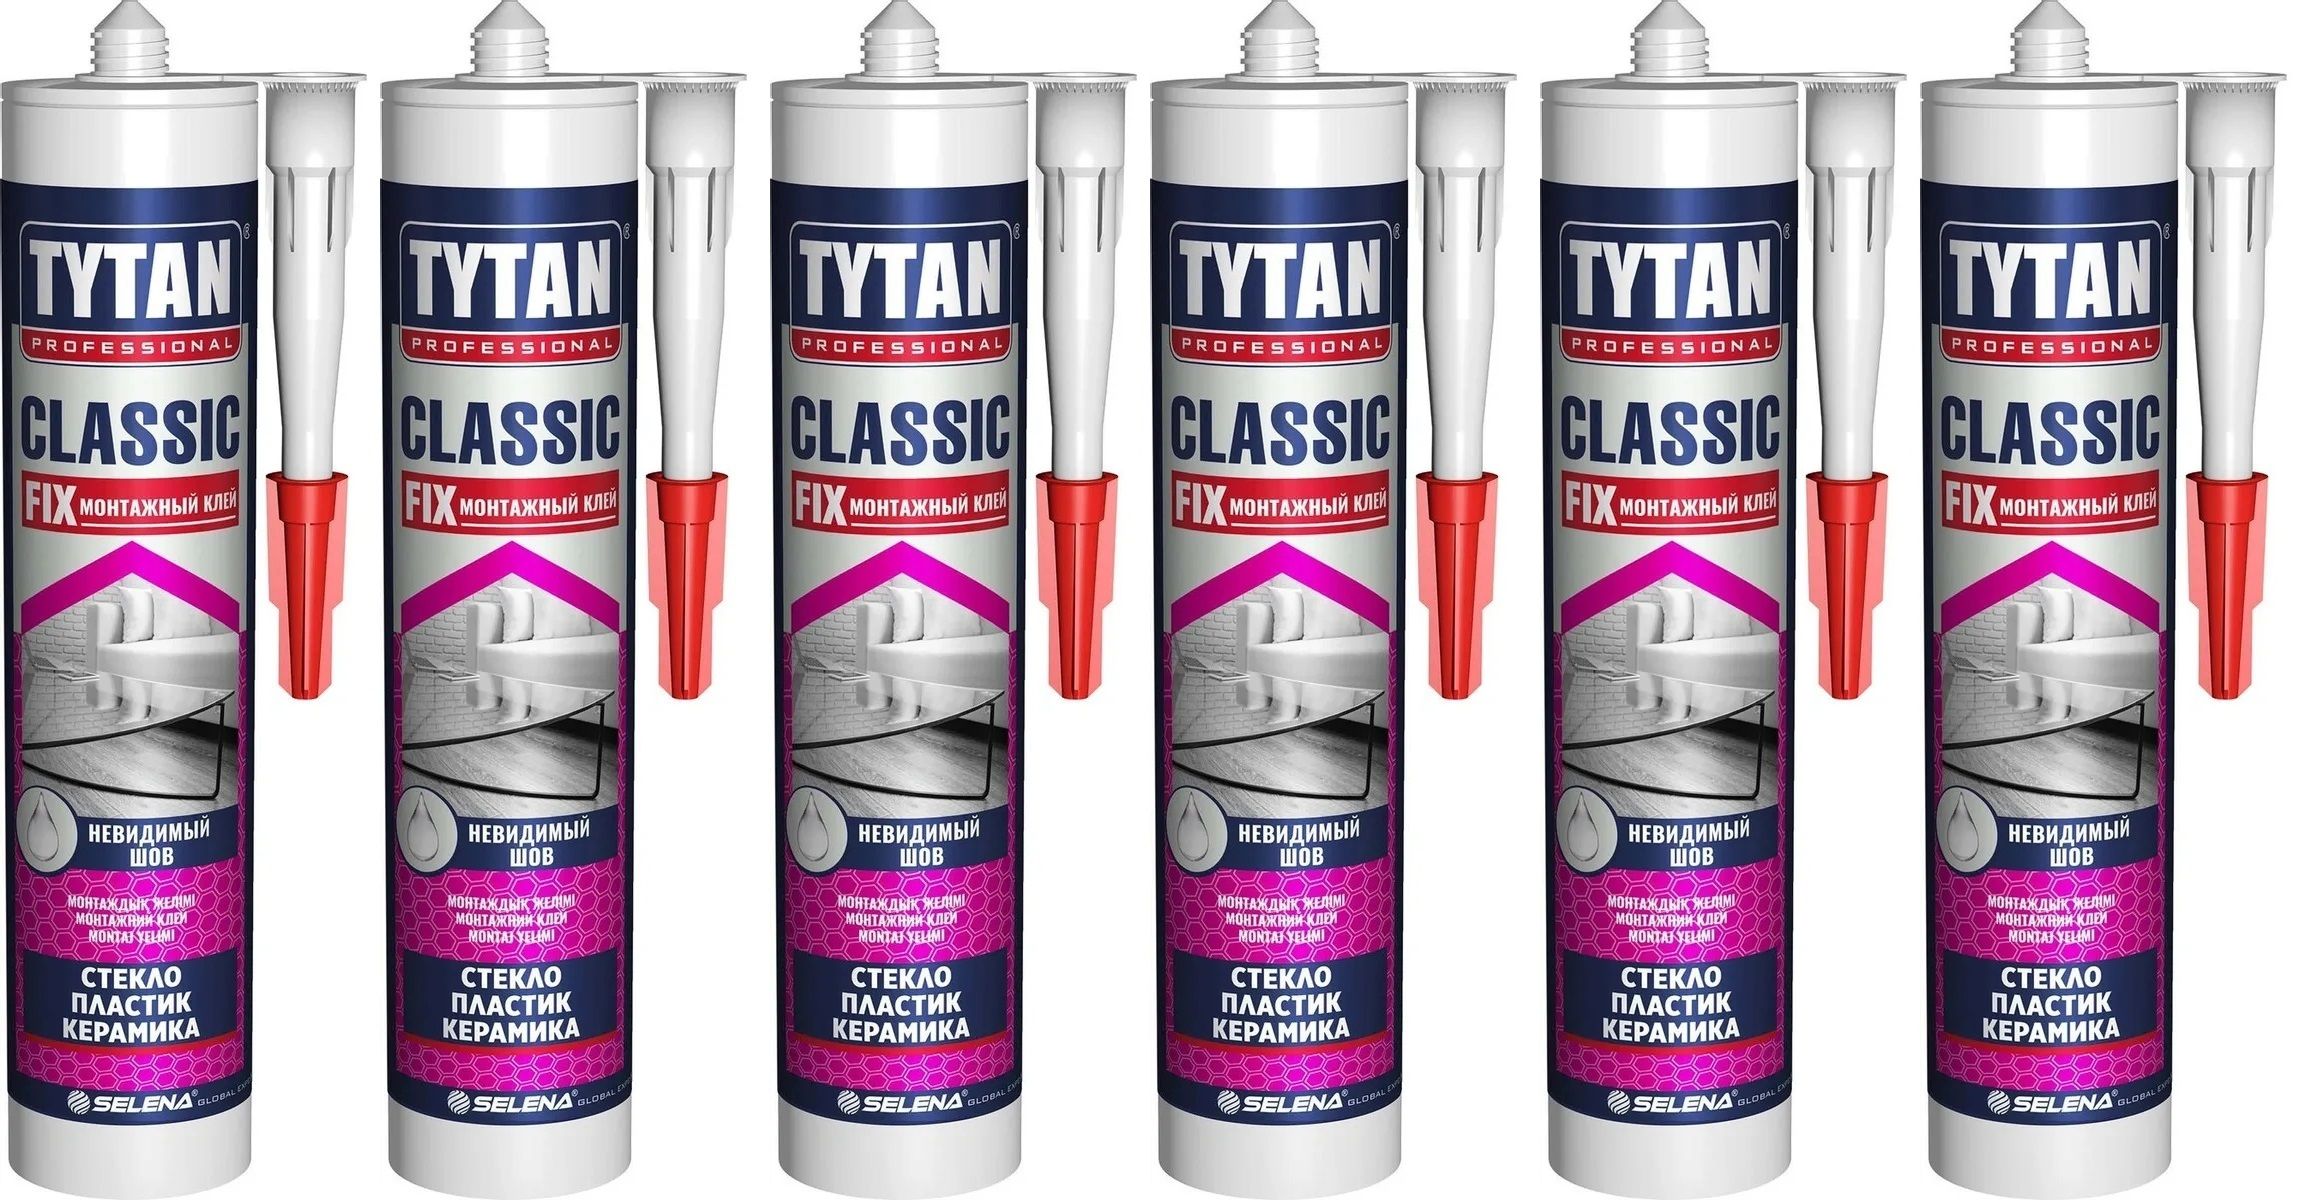 Tytan fix прозрачный. Tytan professional клей монтажный Classic Fix, прозрачный, 310 мл. Клей монтажный Tytan Classic Fix 310 мл. Клей монтажный каучуковый Tytan Classic Fix прозрачный 310 мл. Tytan Classic Fix монтажный клей.